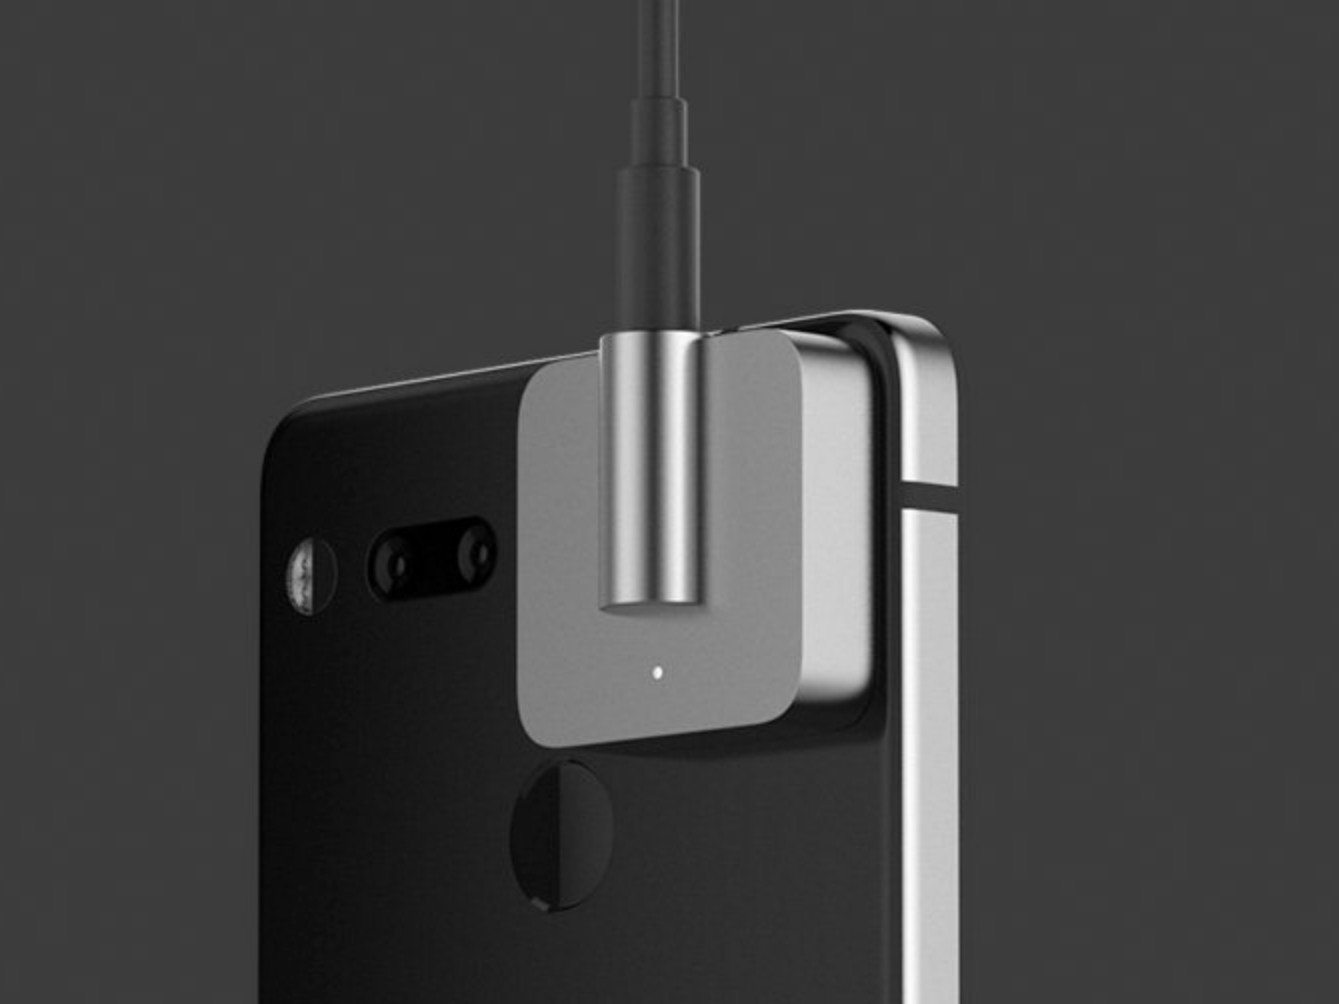 Essential Phone audio adapter